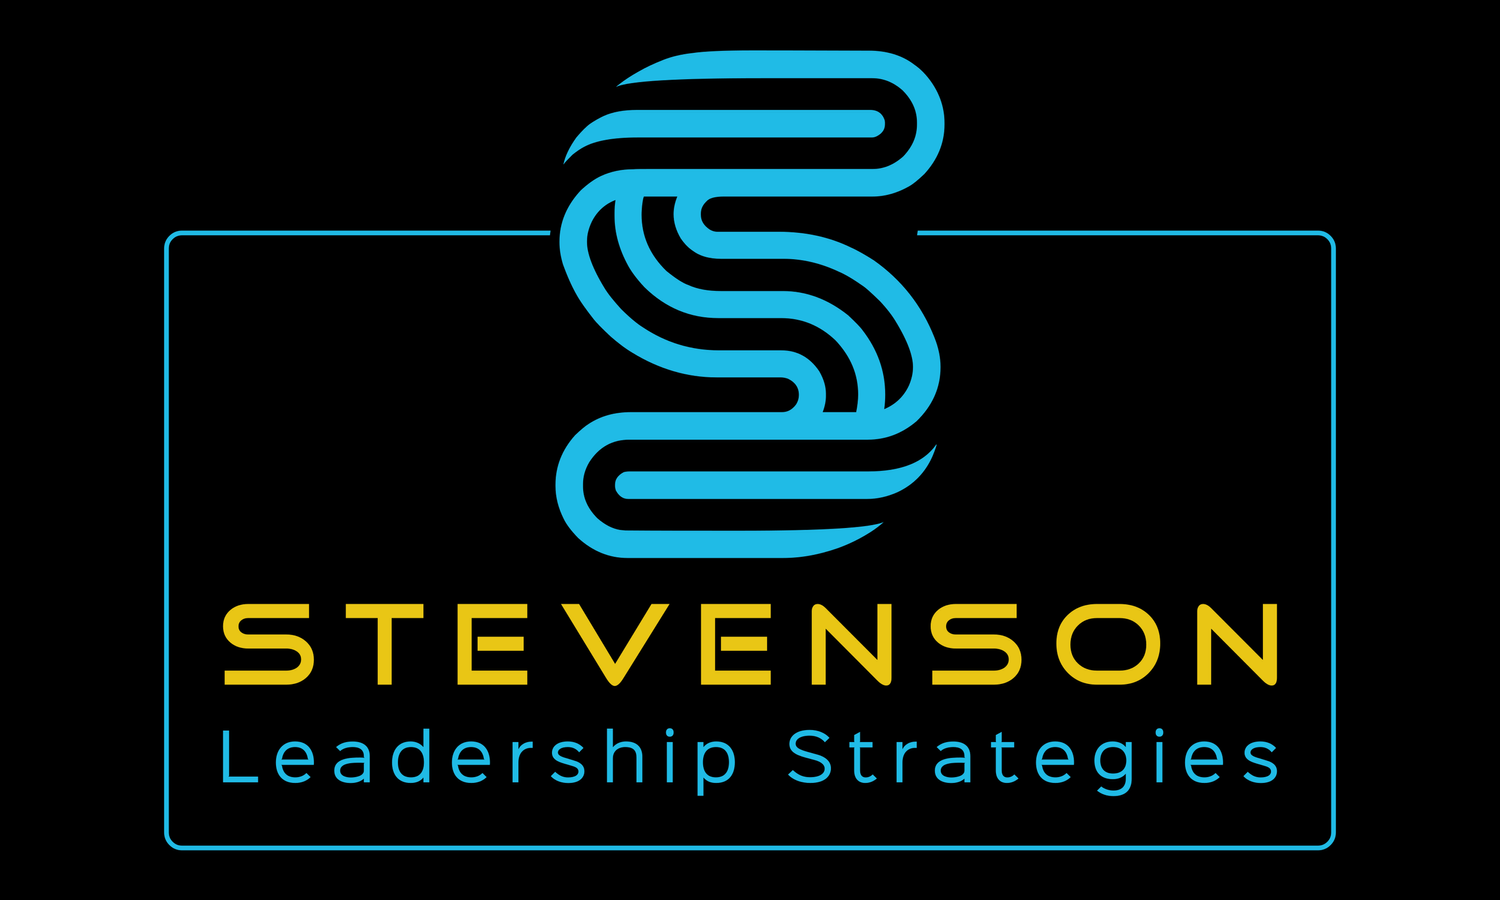 Stevenson Leadership Strategies